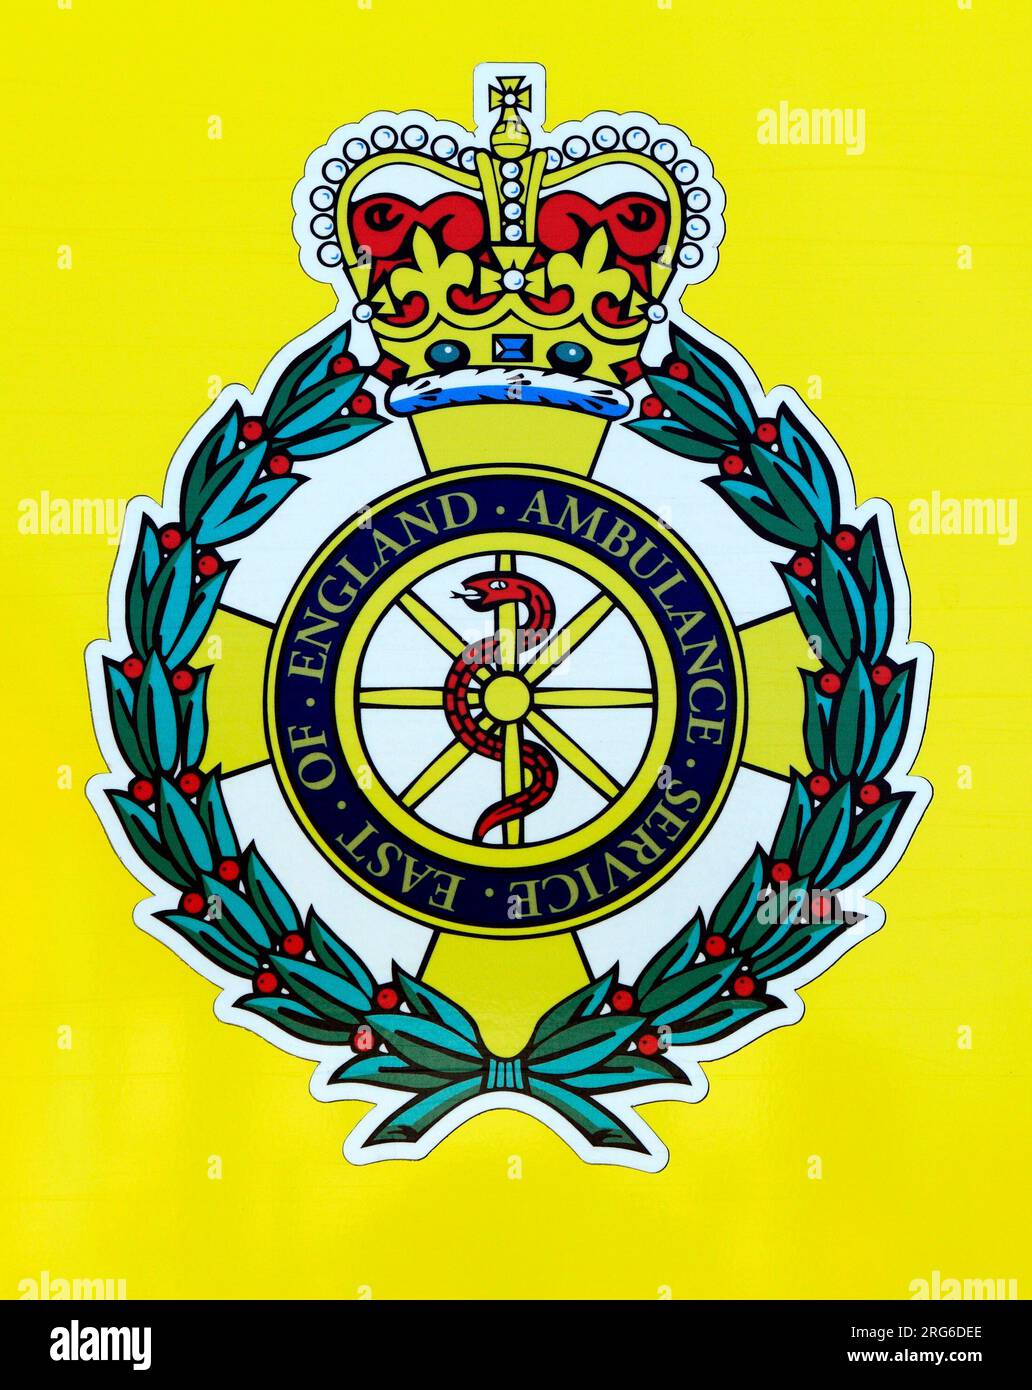 East of England Ambulance Service, logo, badge, Norfolk, England Stock Photo